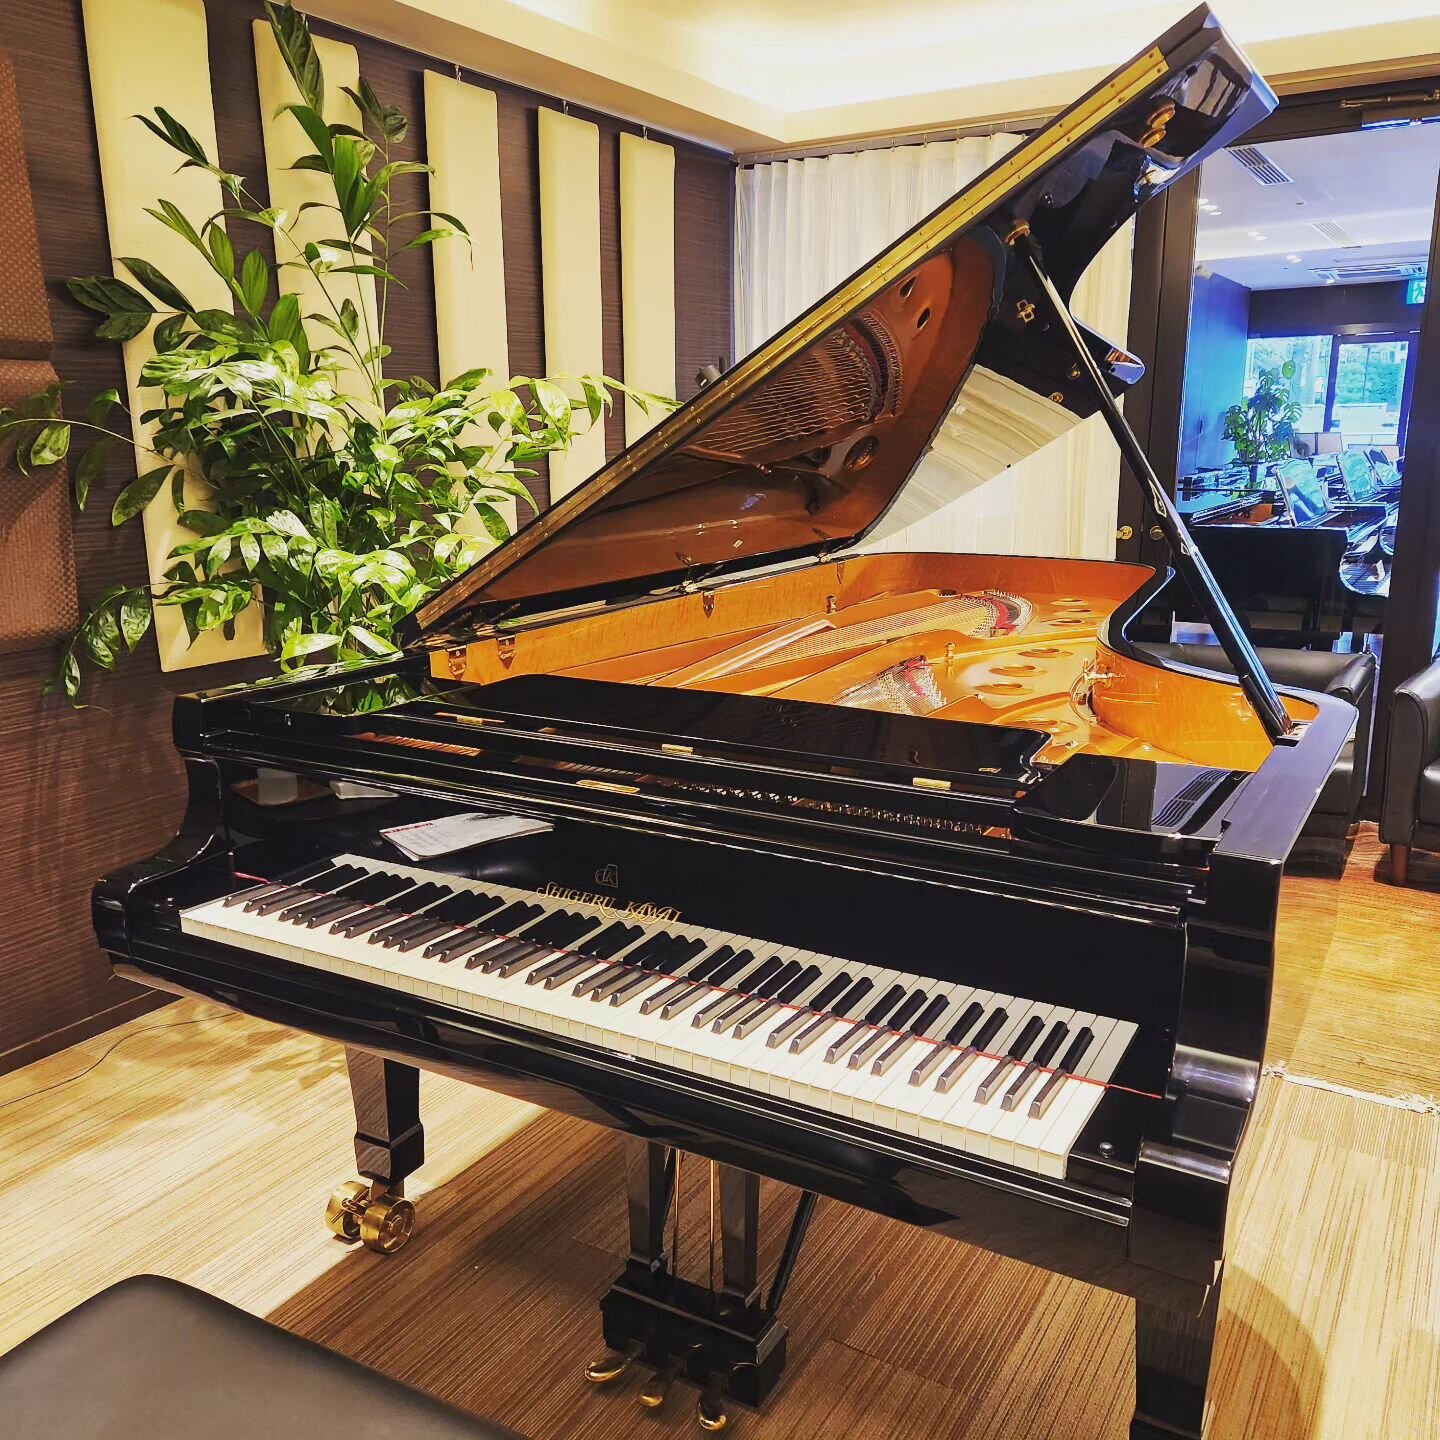 今日はカワイ梅田店にShigeru Kawaiのフルコンの試弾に行ってきました。久しぶりのSKだったので感覚に慣れるのに7、8分かかったのですが、その後は気持ち良すぎ！鍵盤のレスポンスと音の鳴り方が絶妙なバランスで、コントロールしやすく表現の幅を広げてくれるピアノでした。

因みにこのピアノ、仙台国際ピアノコンクールで使用されたもので、このモデルになかでも自信作の個体だそうです。

#shigerukawai #SK-EX #ピアノ #ピアノの魅力